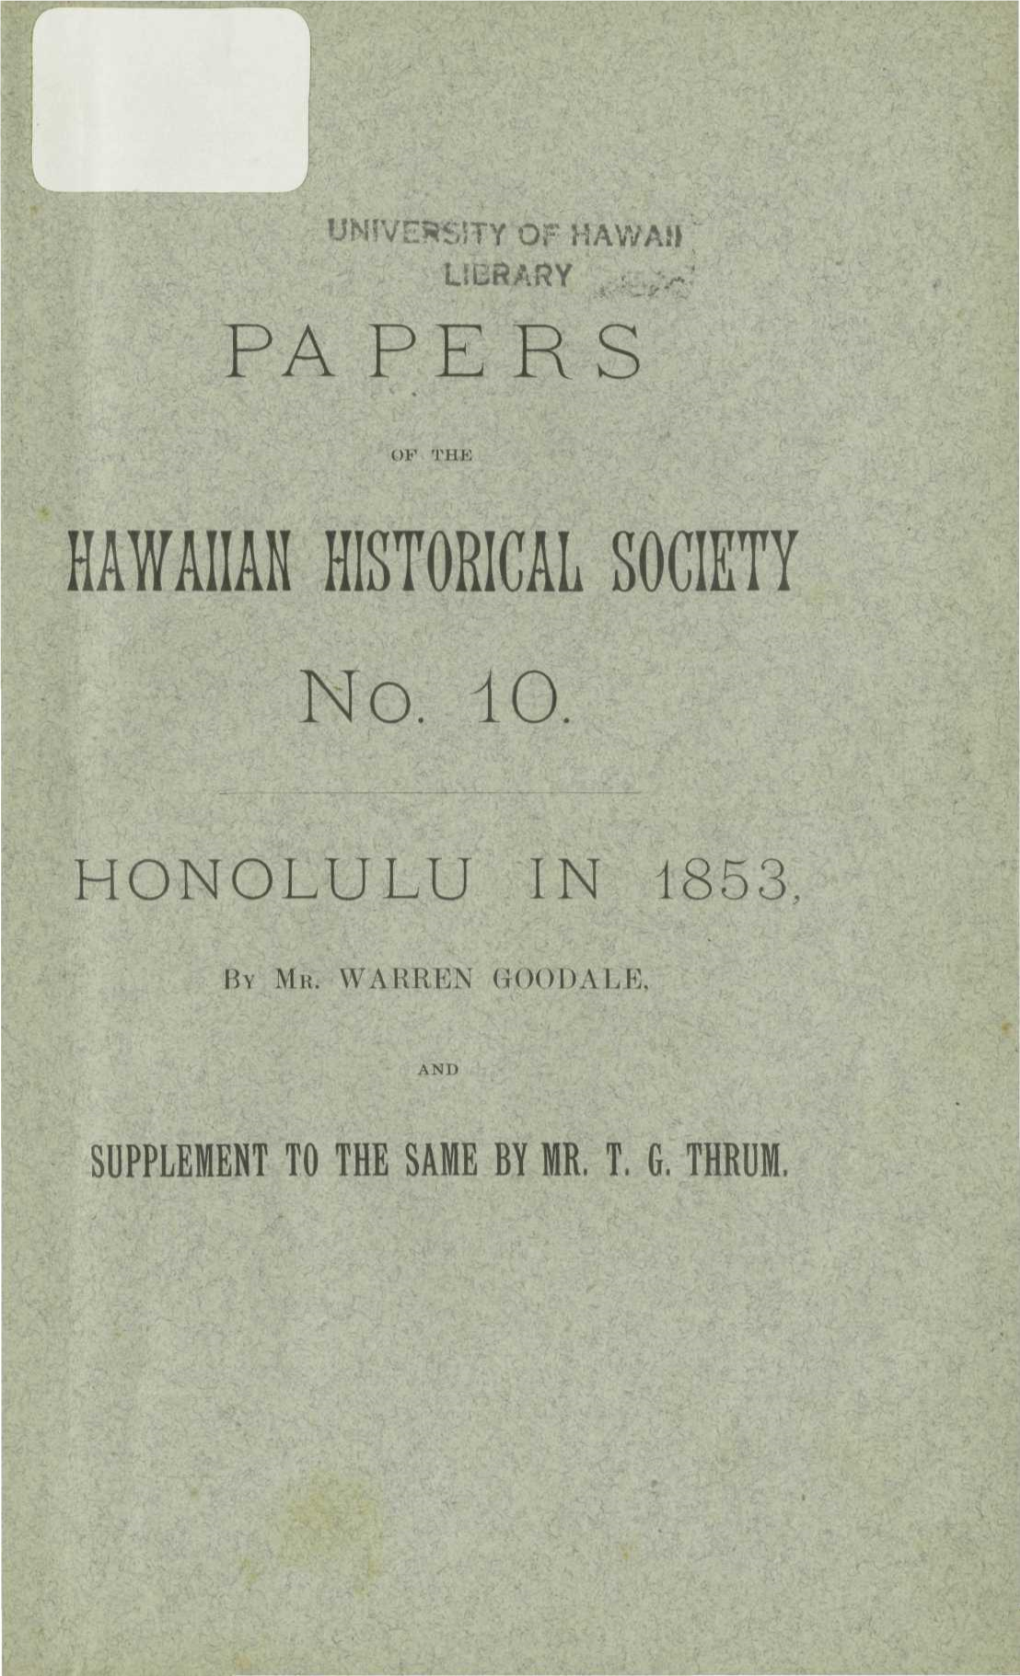 HAWAIIAN HISTORICAL SOCIETY No